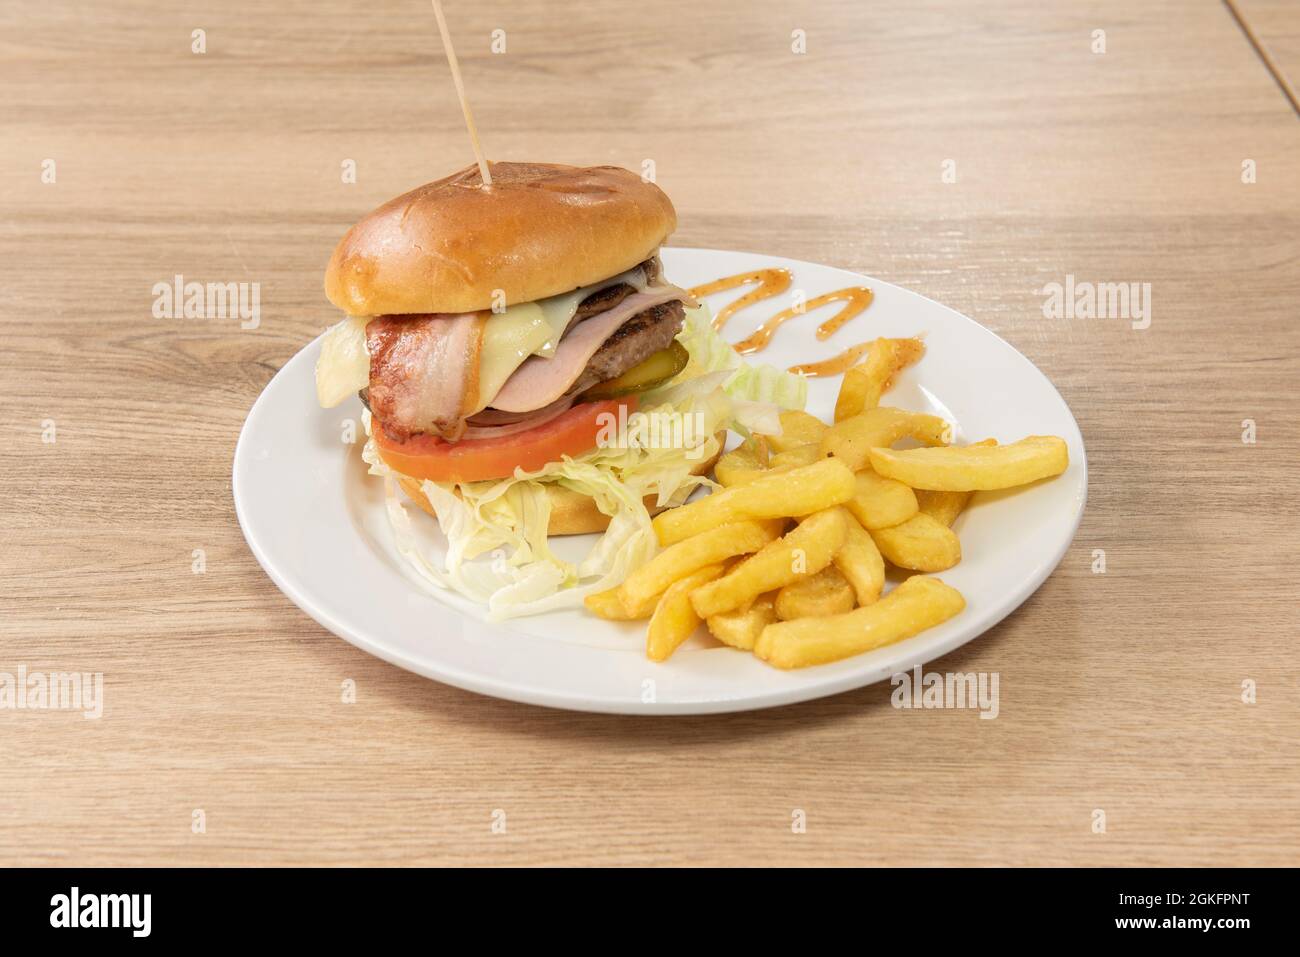 Klassischer Rindfleischburger mit Speck, Schinken, eingelegten Gurken, Tomaten und Zwiebeln und einer Seite Pommes frites Stockfoto